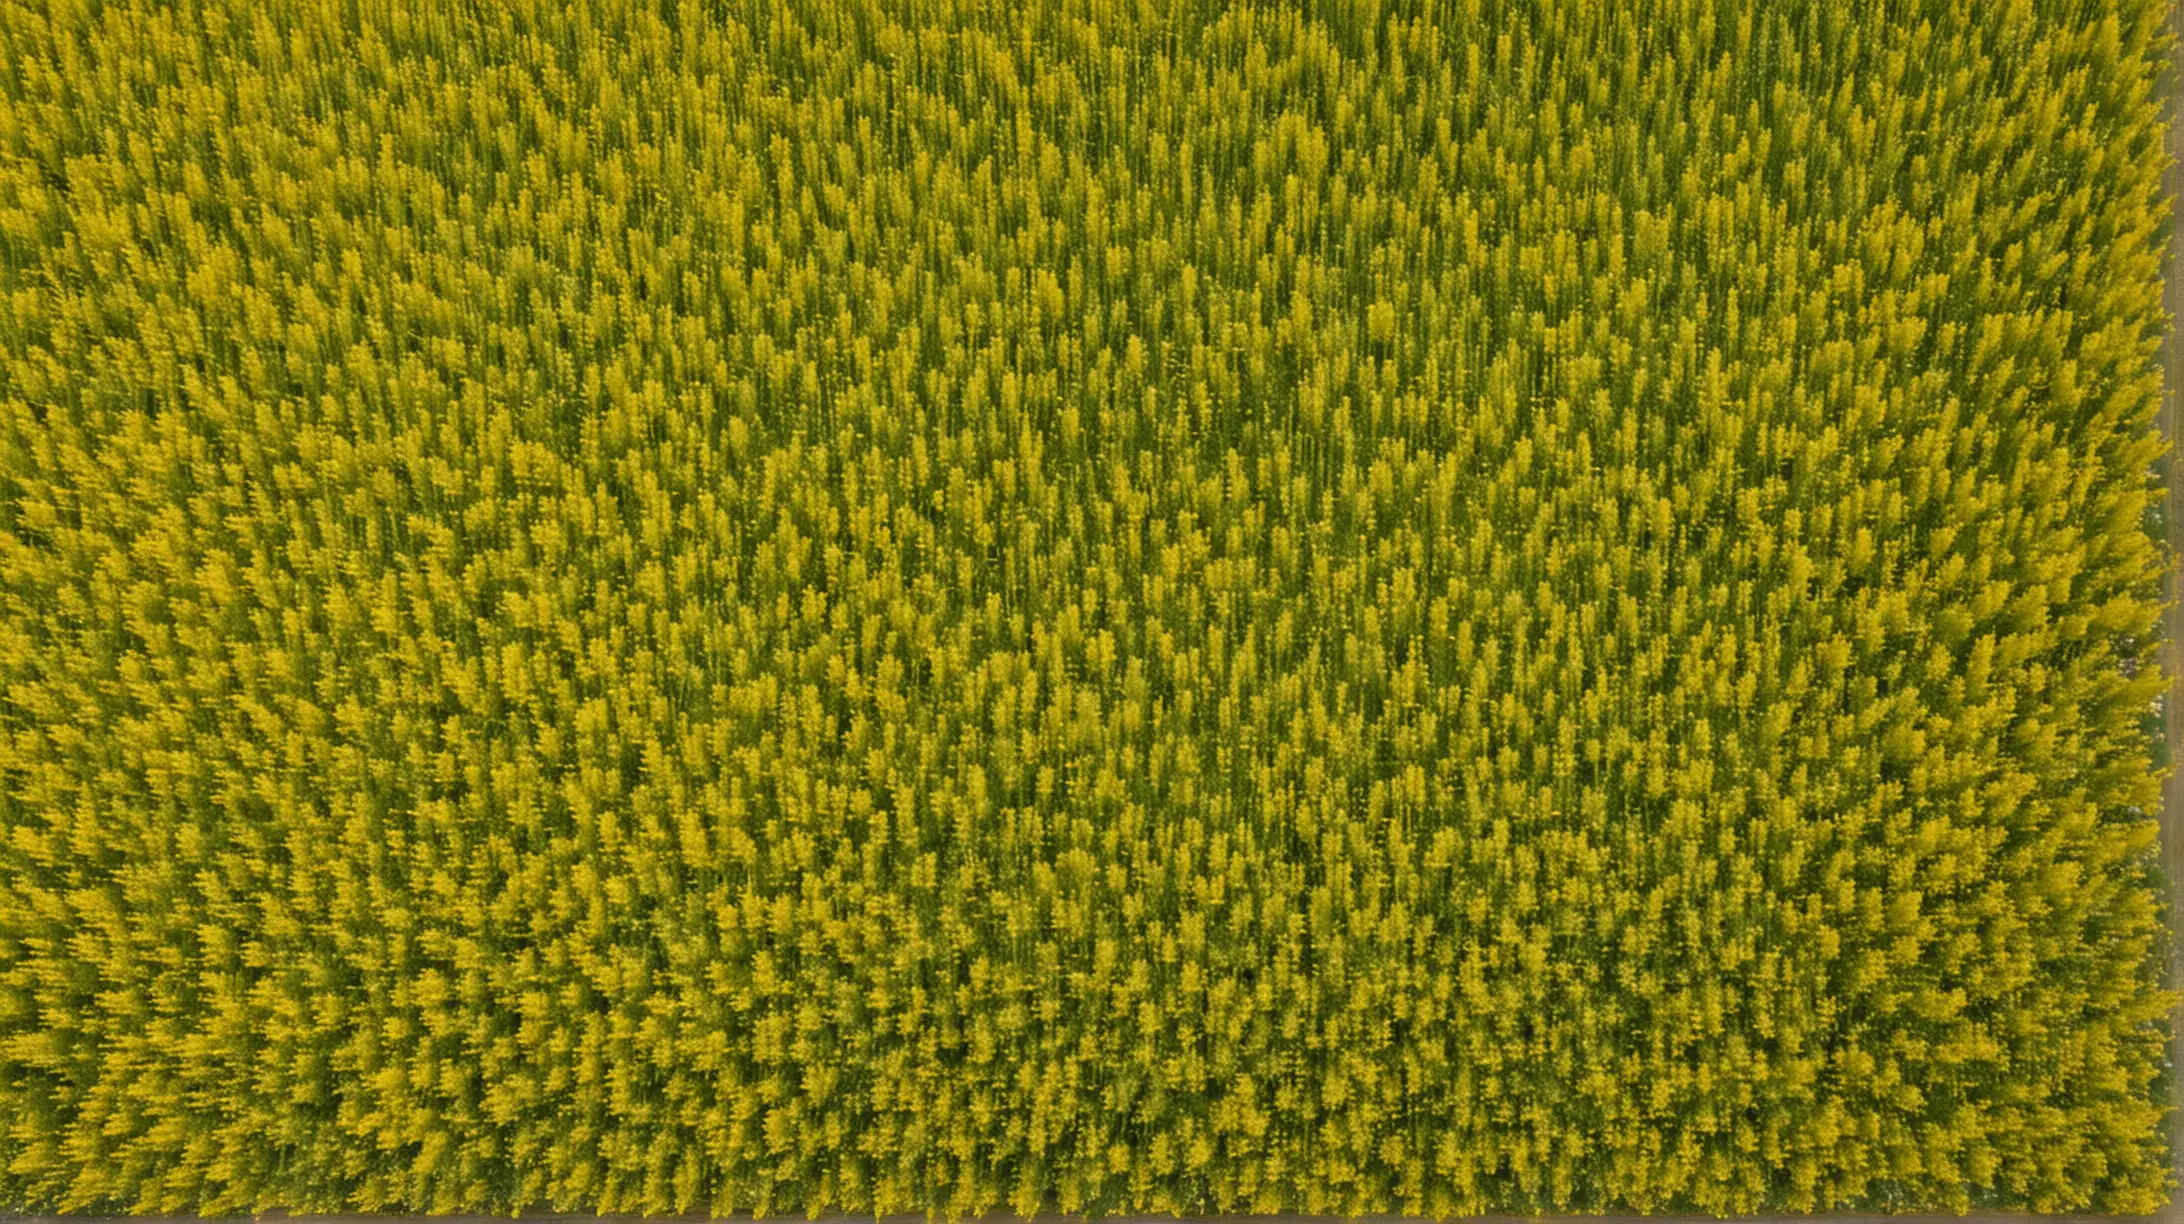 Vast Yellowish Hyssop Herb Fields Aerial Landscape View